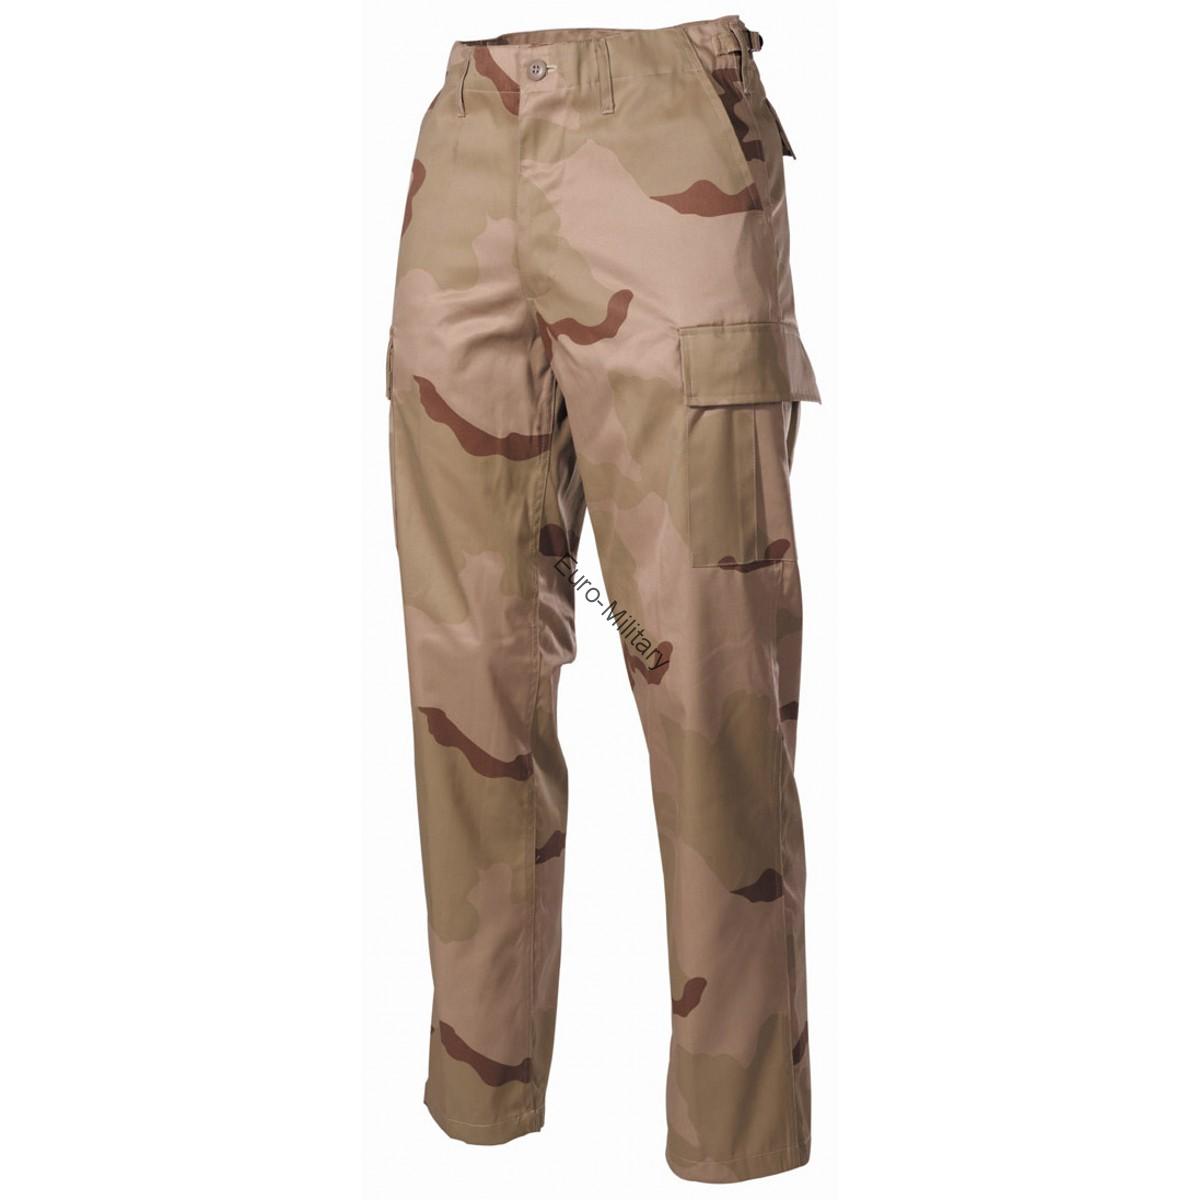 Desert Camo Pattern BDU Field Pants